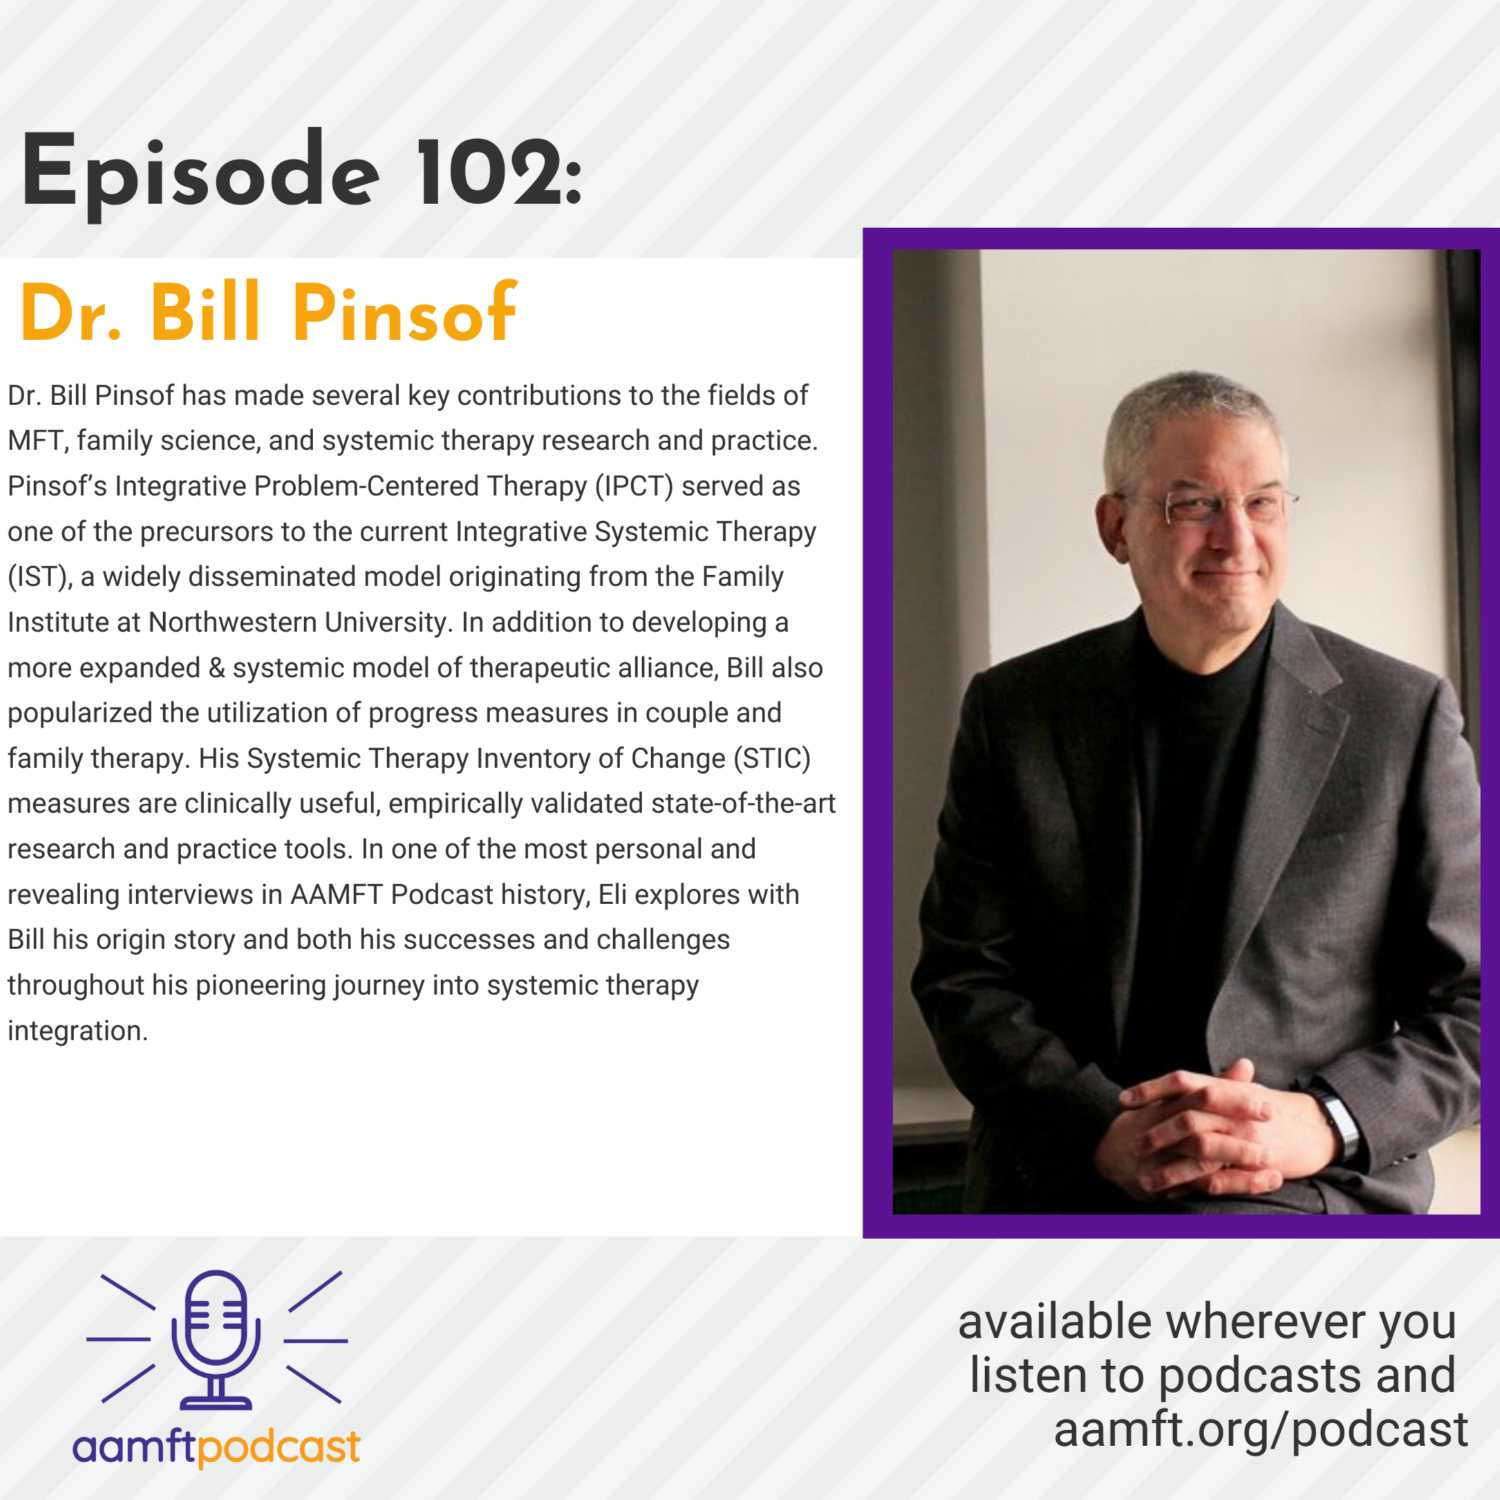 Episode 102: Bill Pinsof